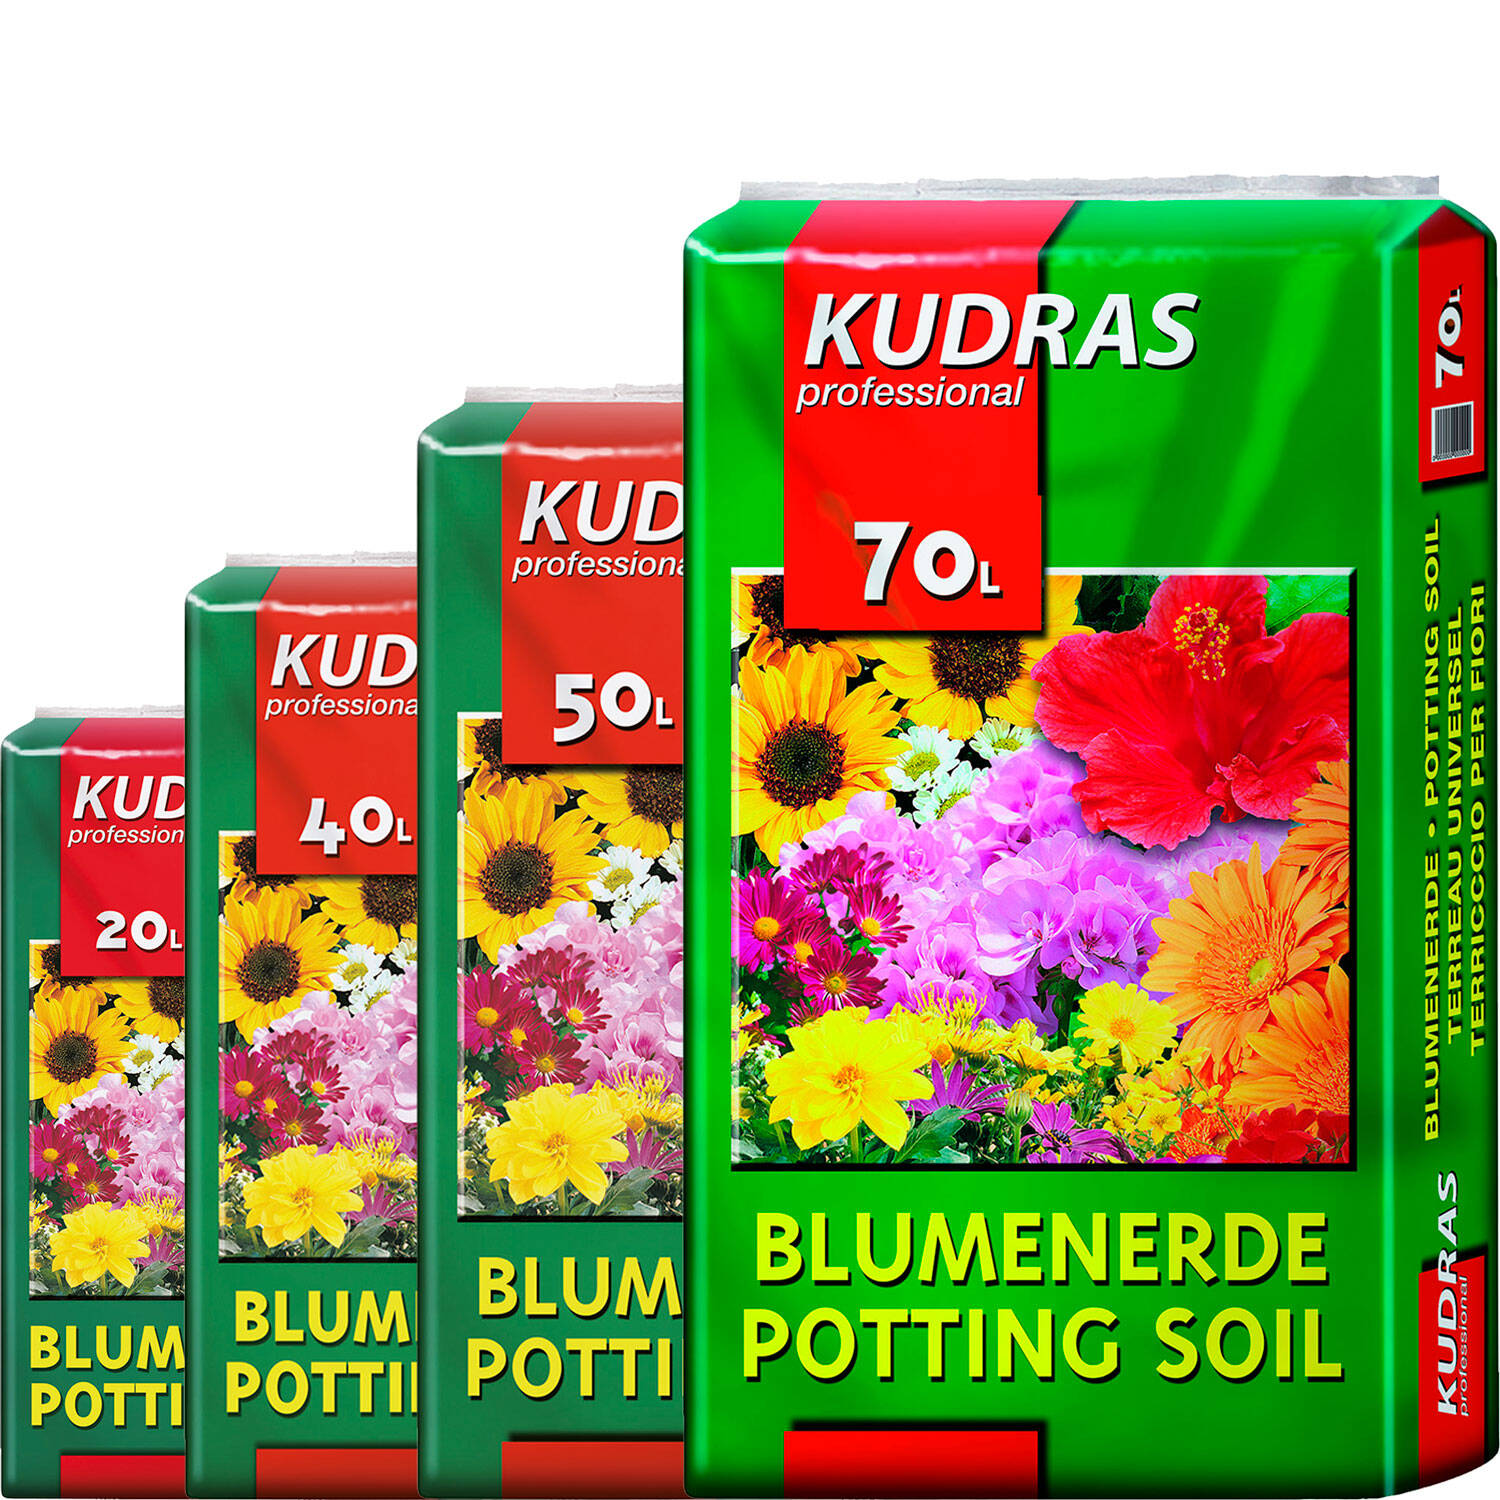 Kategorie <b>Produkt nicht gewünscht </b> -  - Kudras Universal Blumenerde